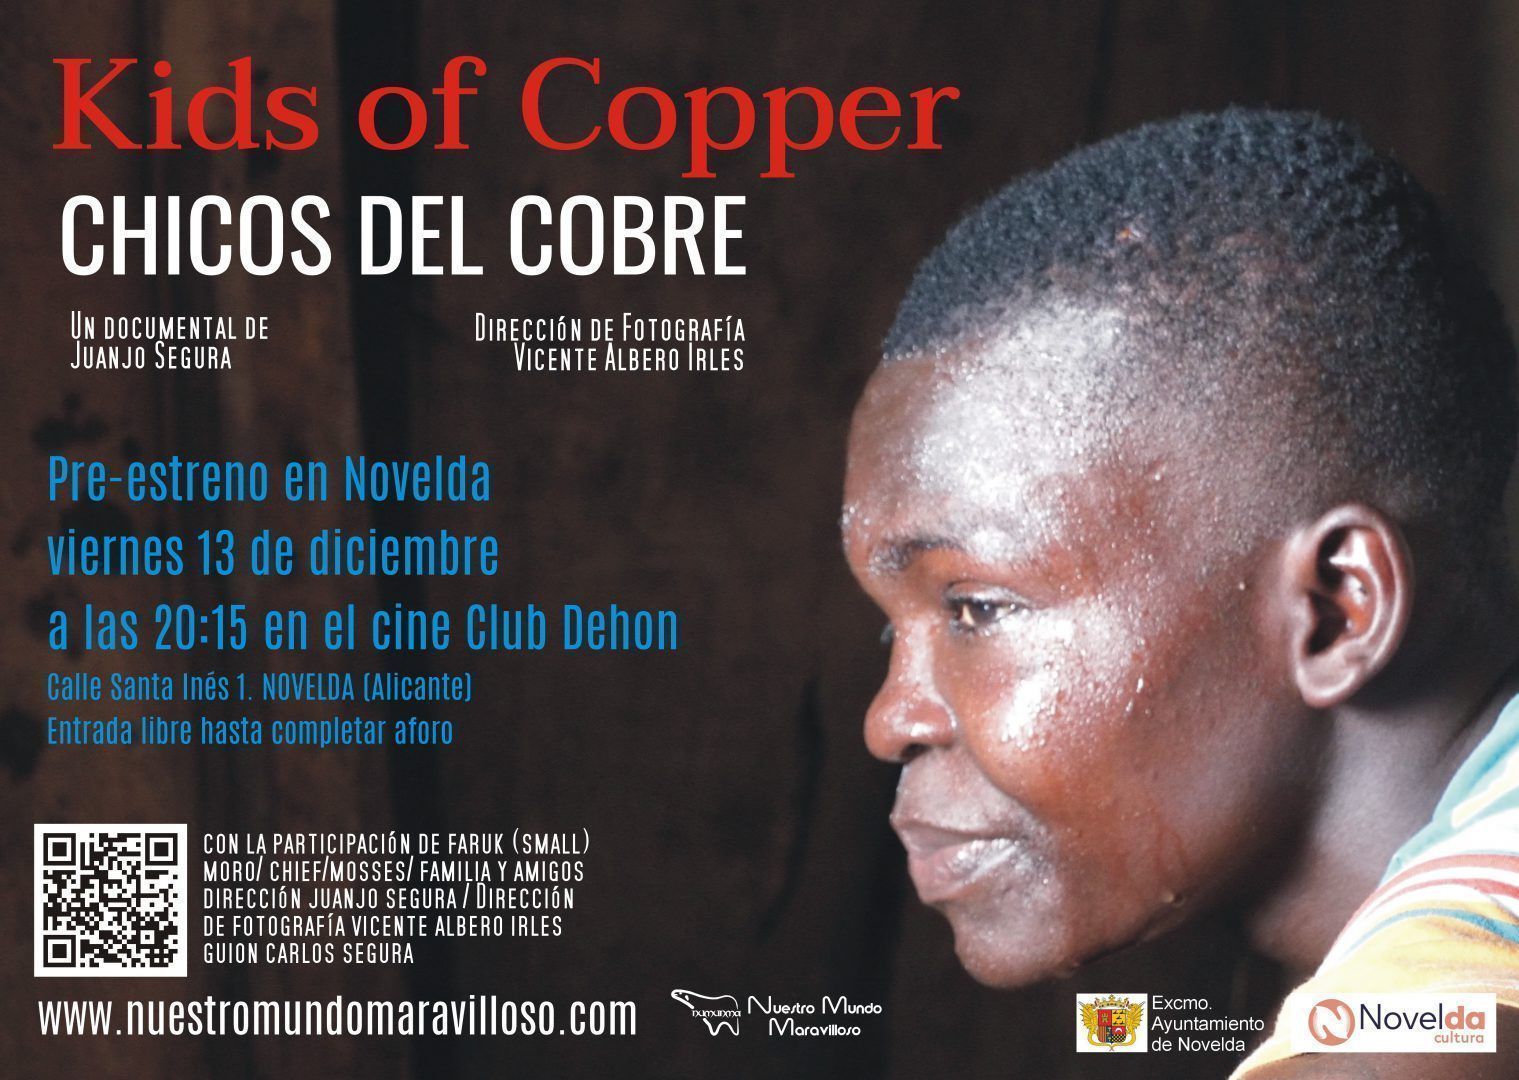 Ayuntamiento de Novelda Pre-Estreno-CHICOS-DEL-COBRE Pre estreno de Kids of Copper 